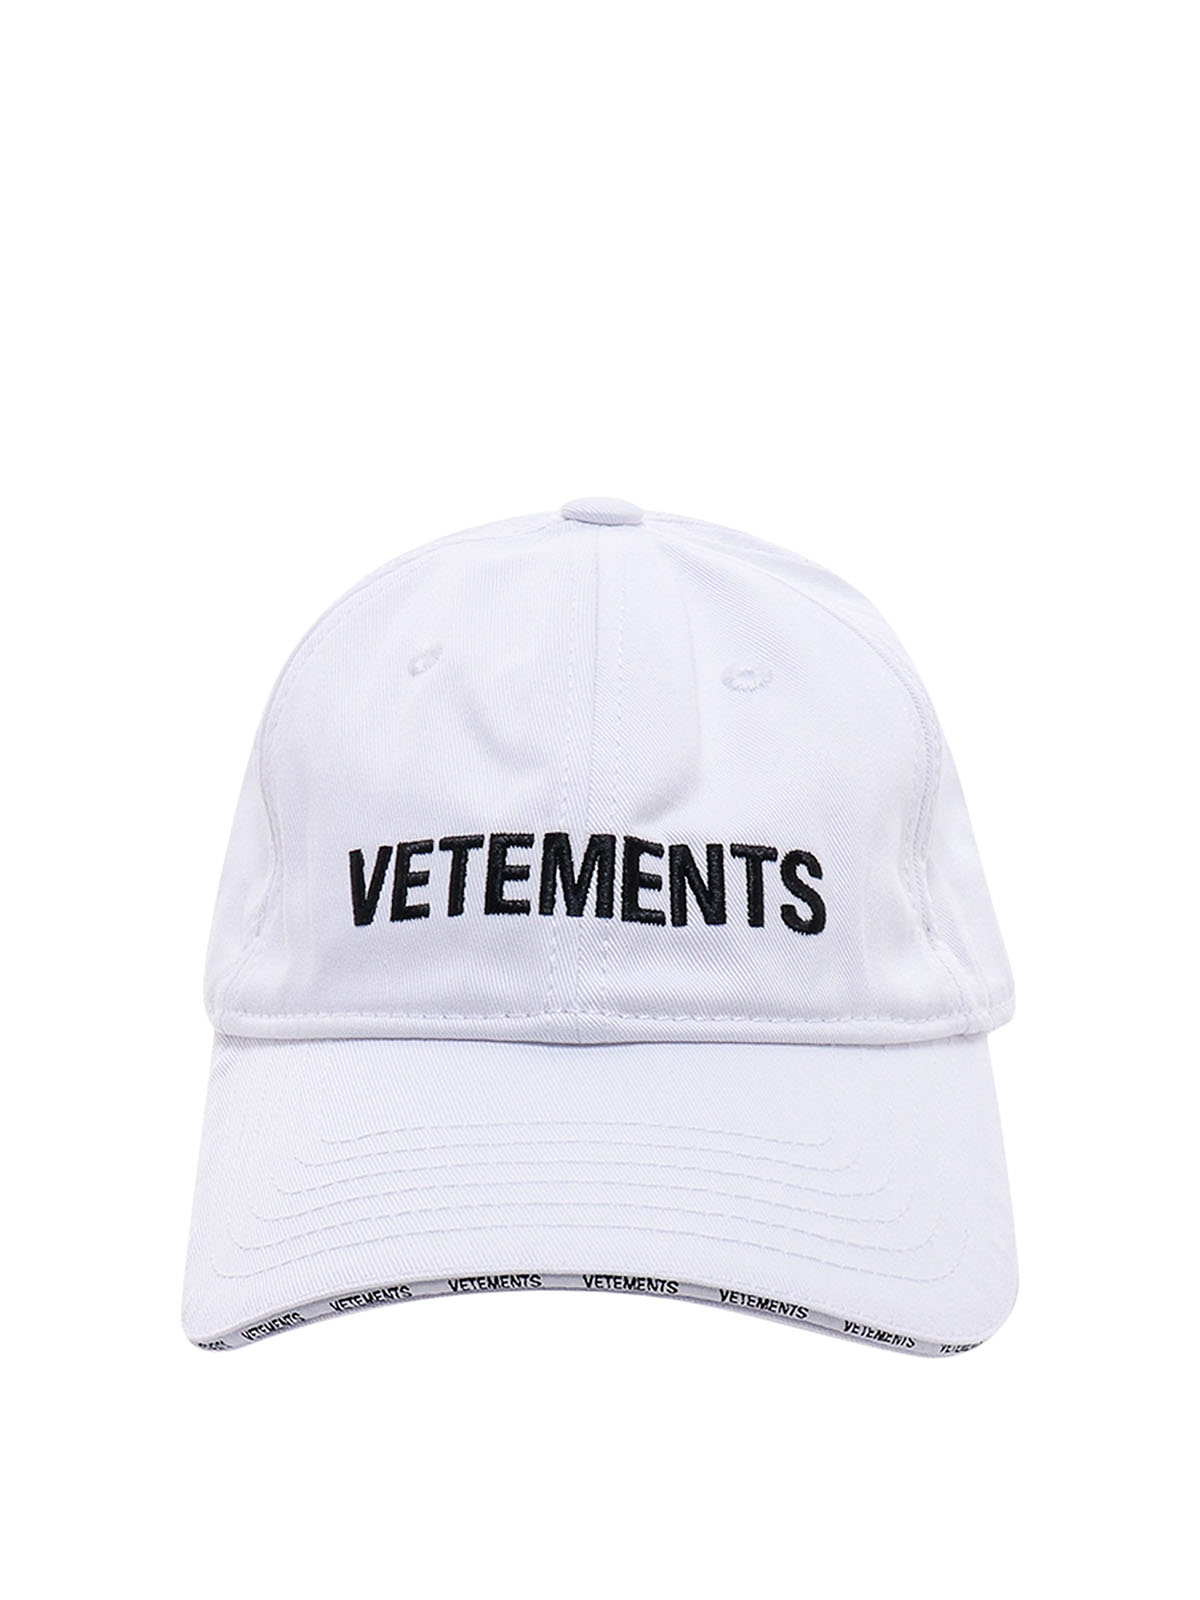 Hats & caps Vetements - Cotton hat - UE63CA100WWHITE